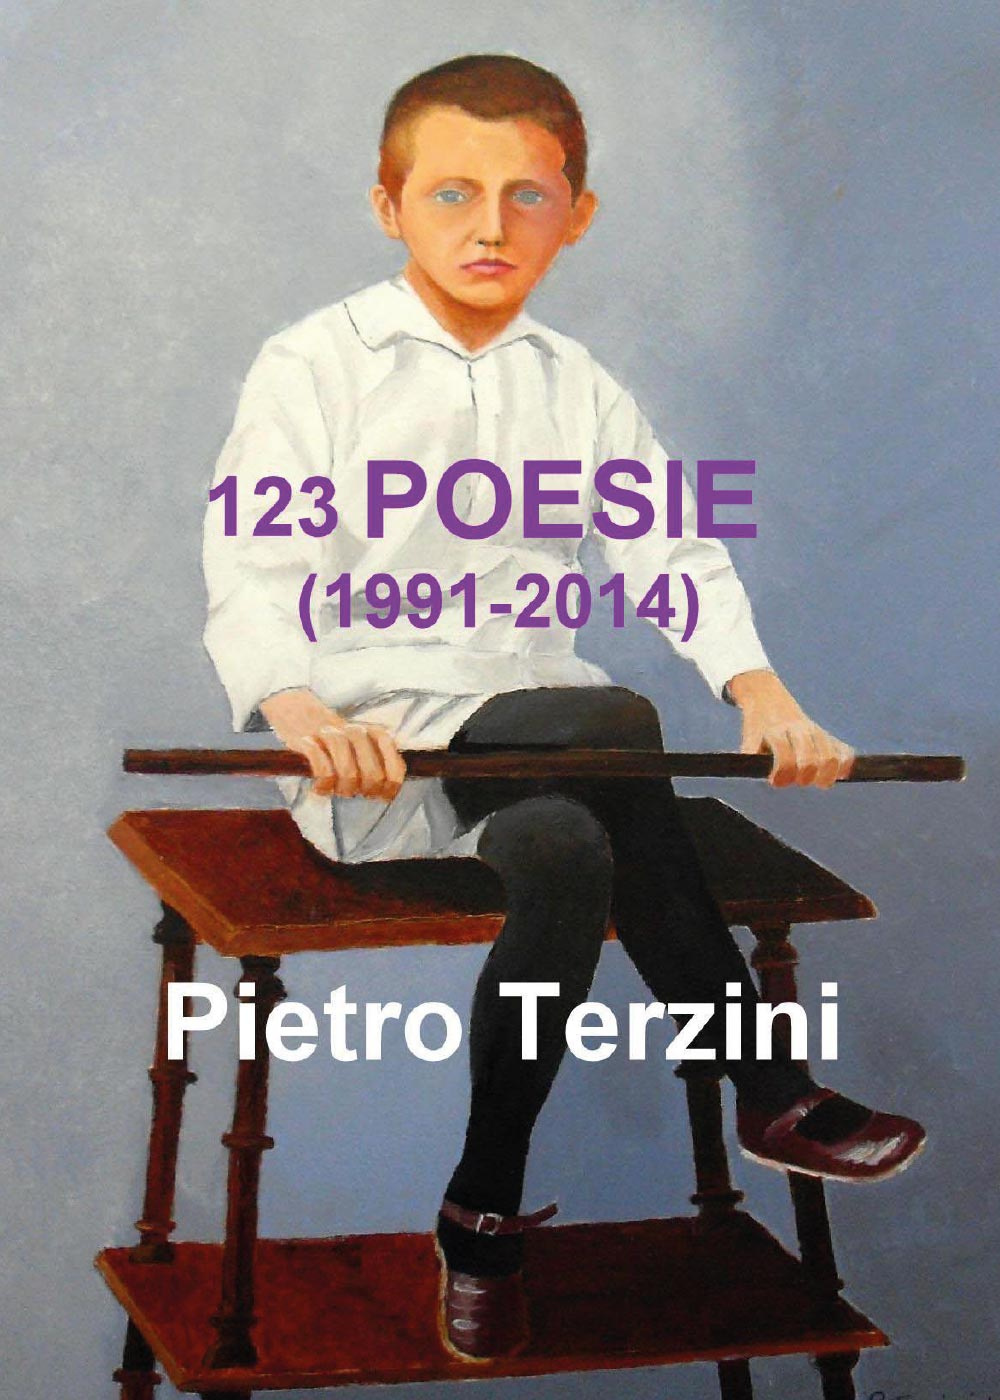 123 poesie (1991-2014)